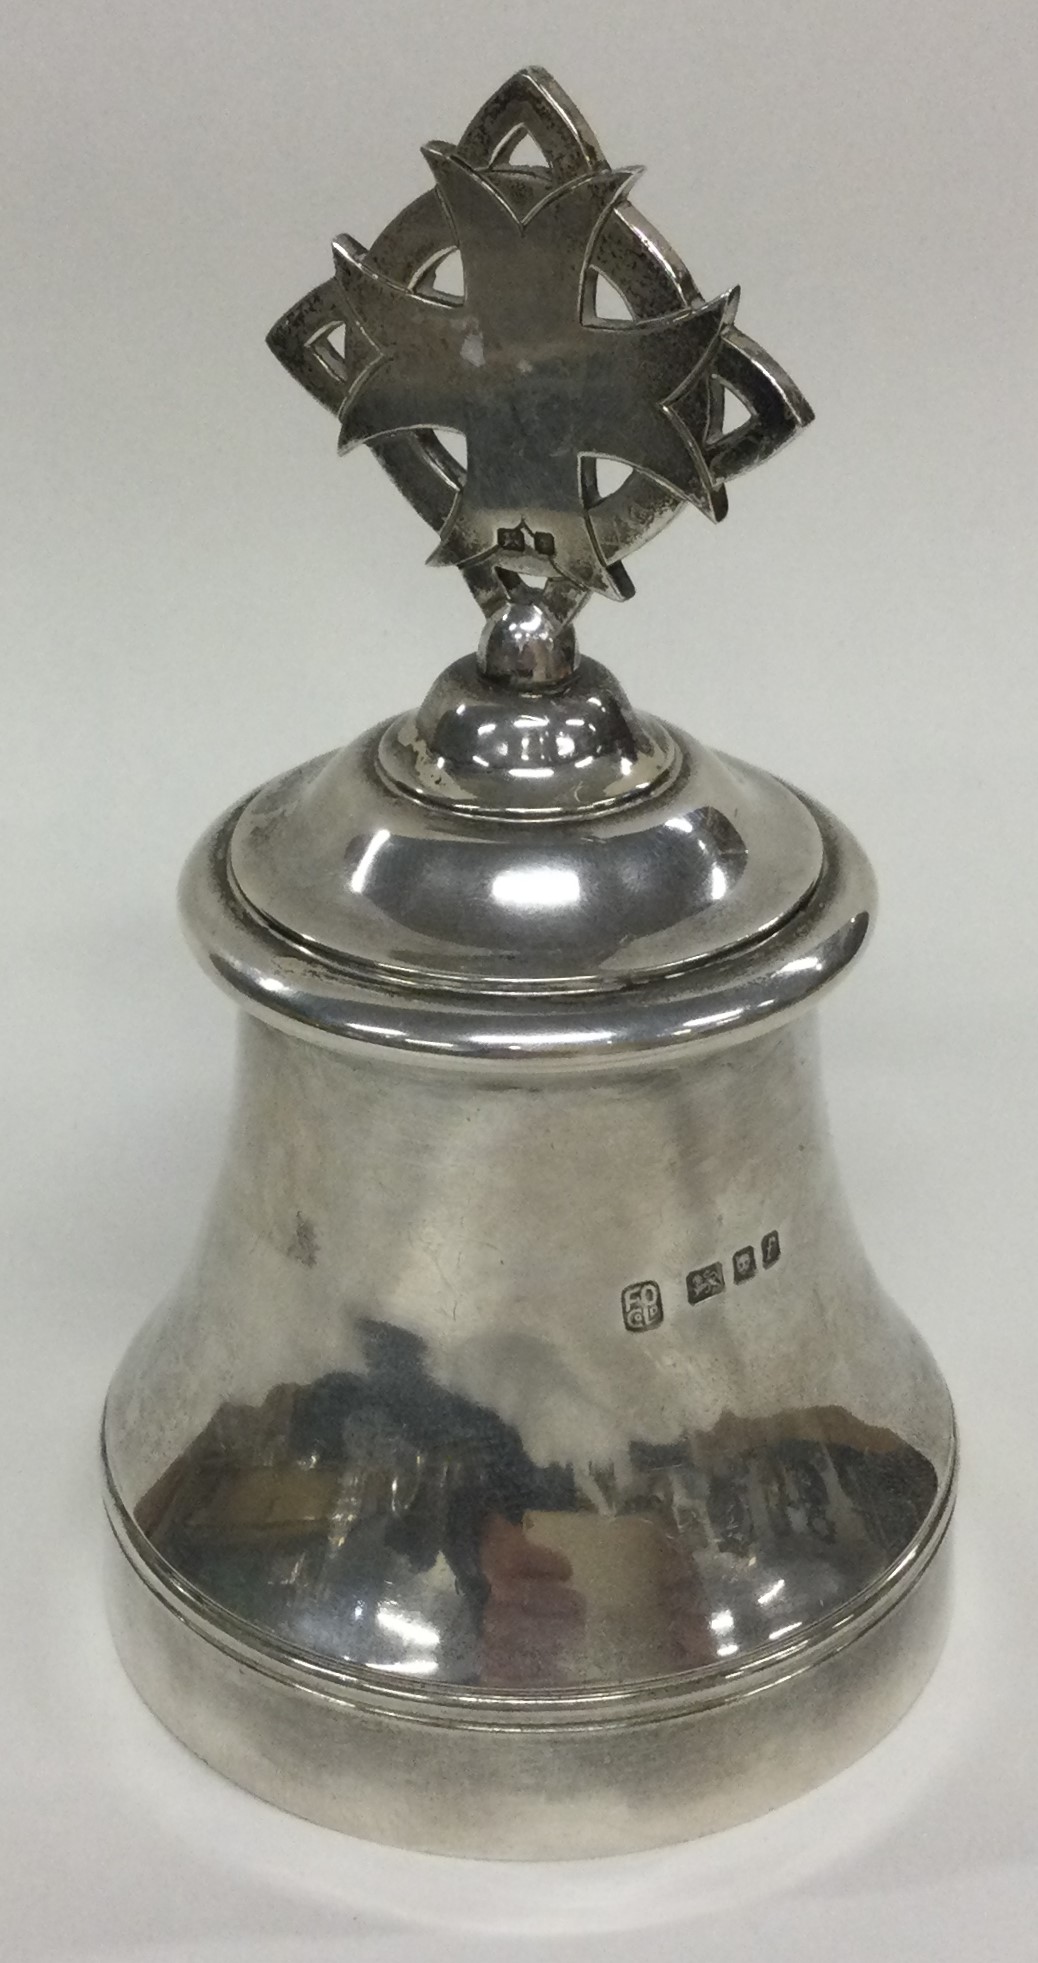 A silver table bell. London 1961. By F Osborne & Co Ltd.